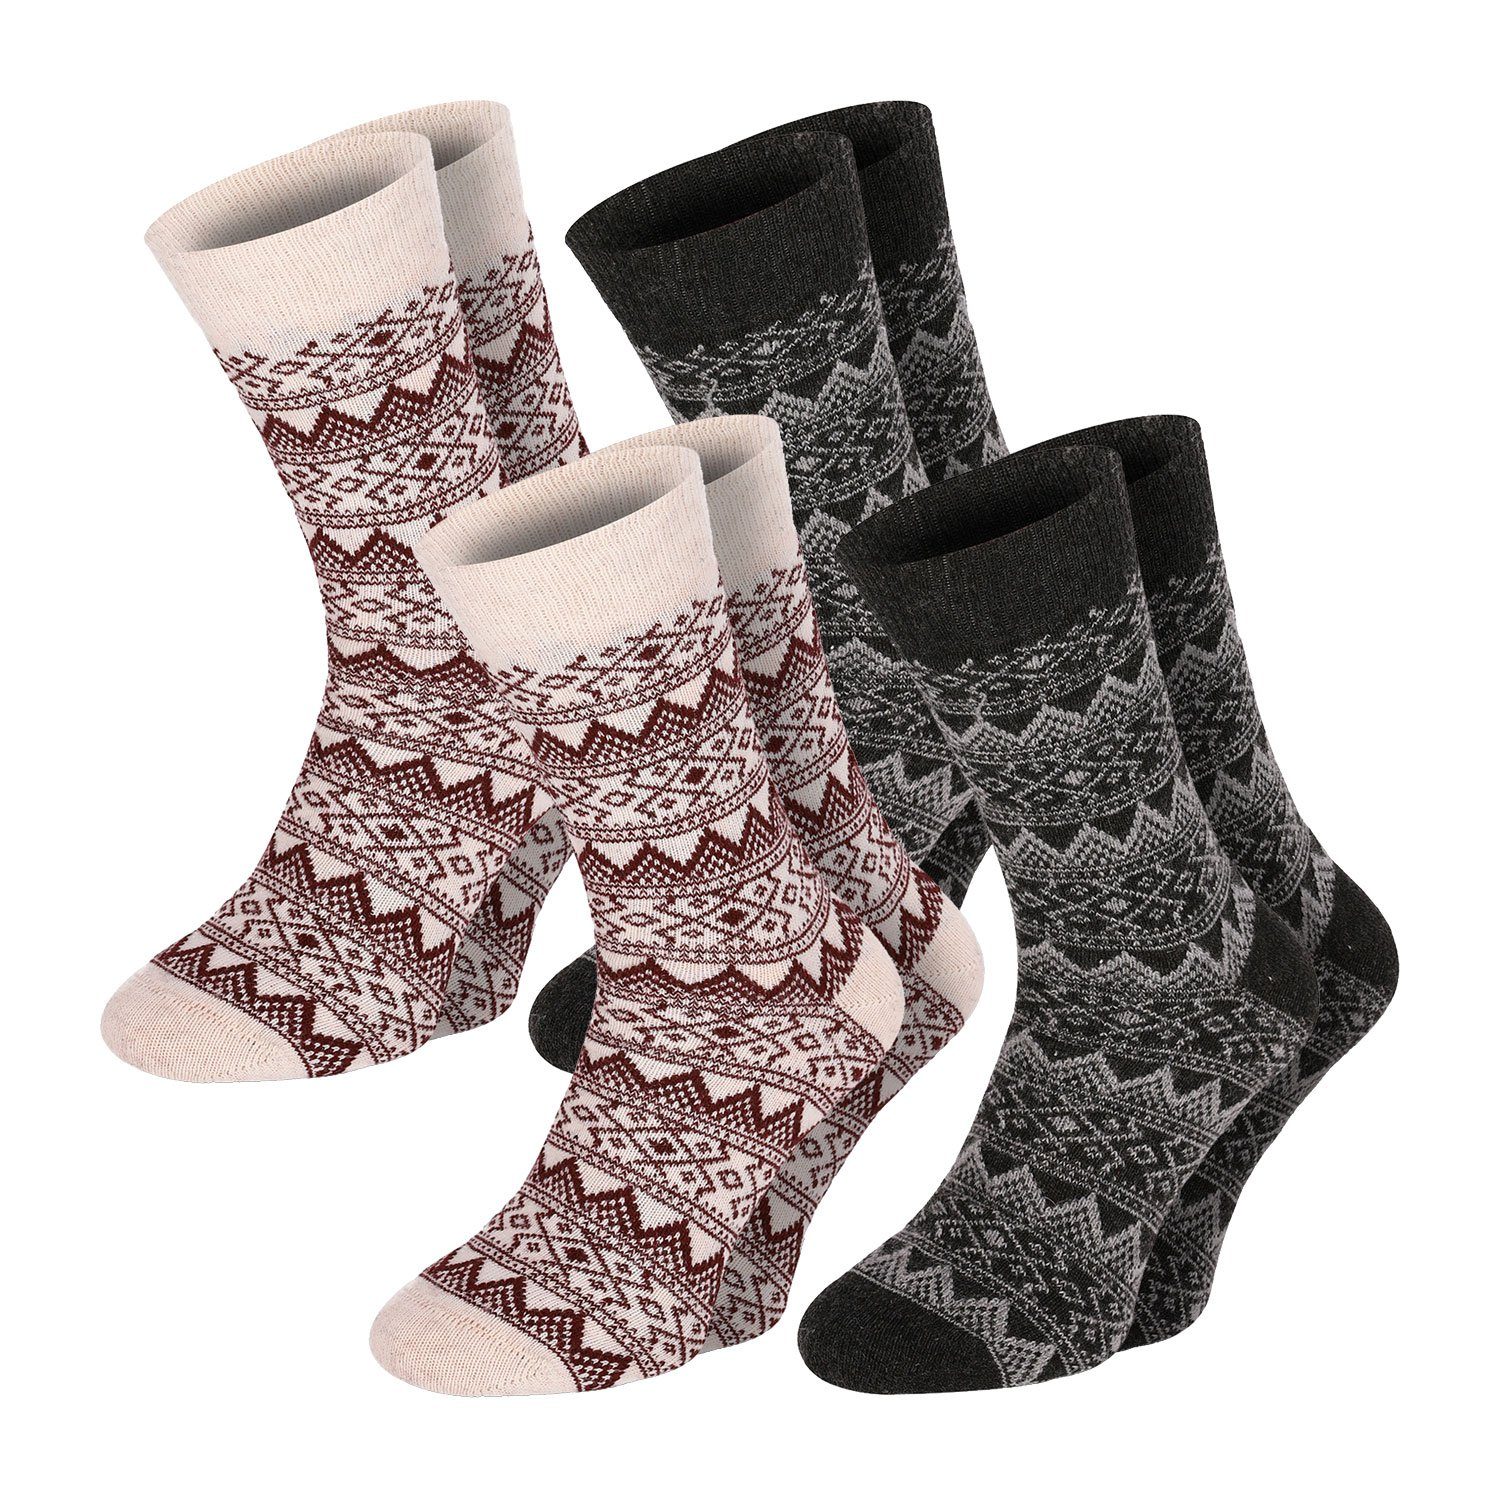 Chili Lifestyle Strümpfe Socken Wool Classic Winter Schaf Wolle Damen Herren Warm farbig 4 Paar | Strümpfe